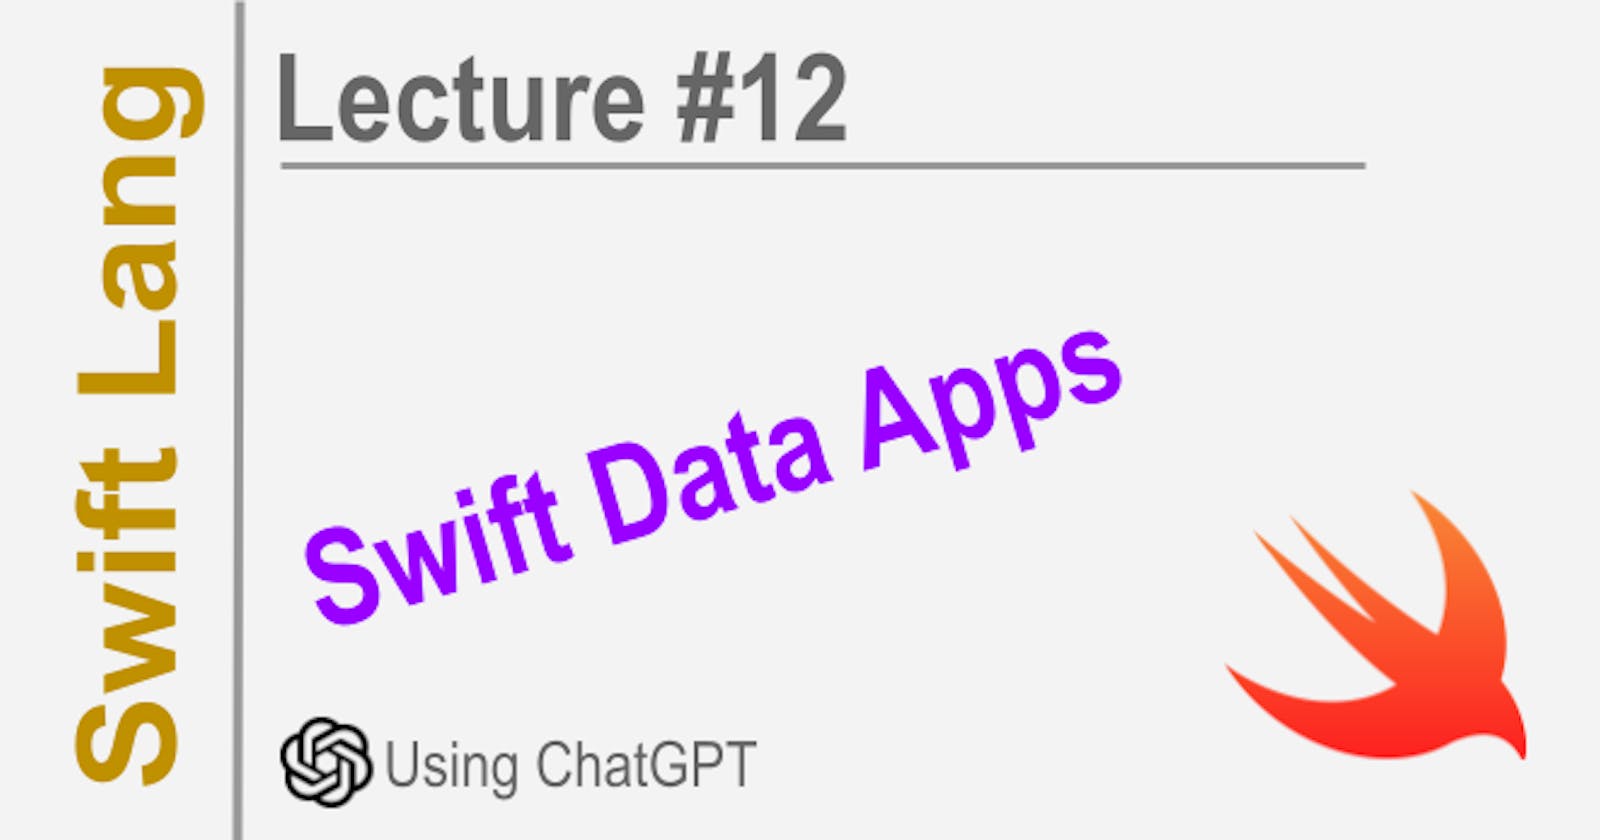 Swift Data Apps